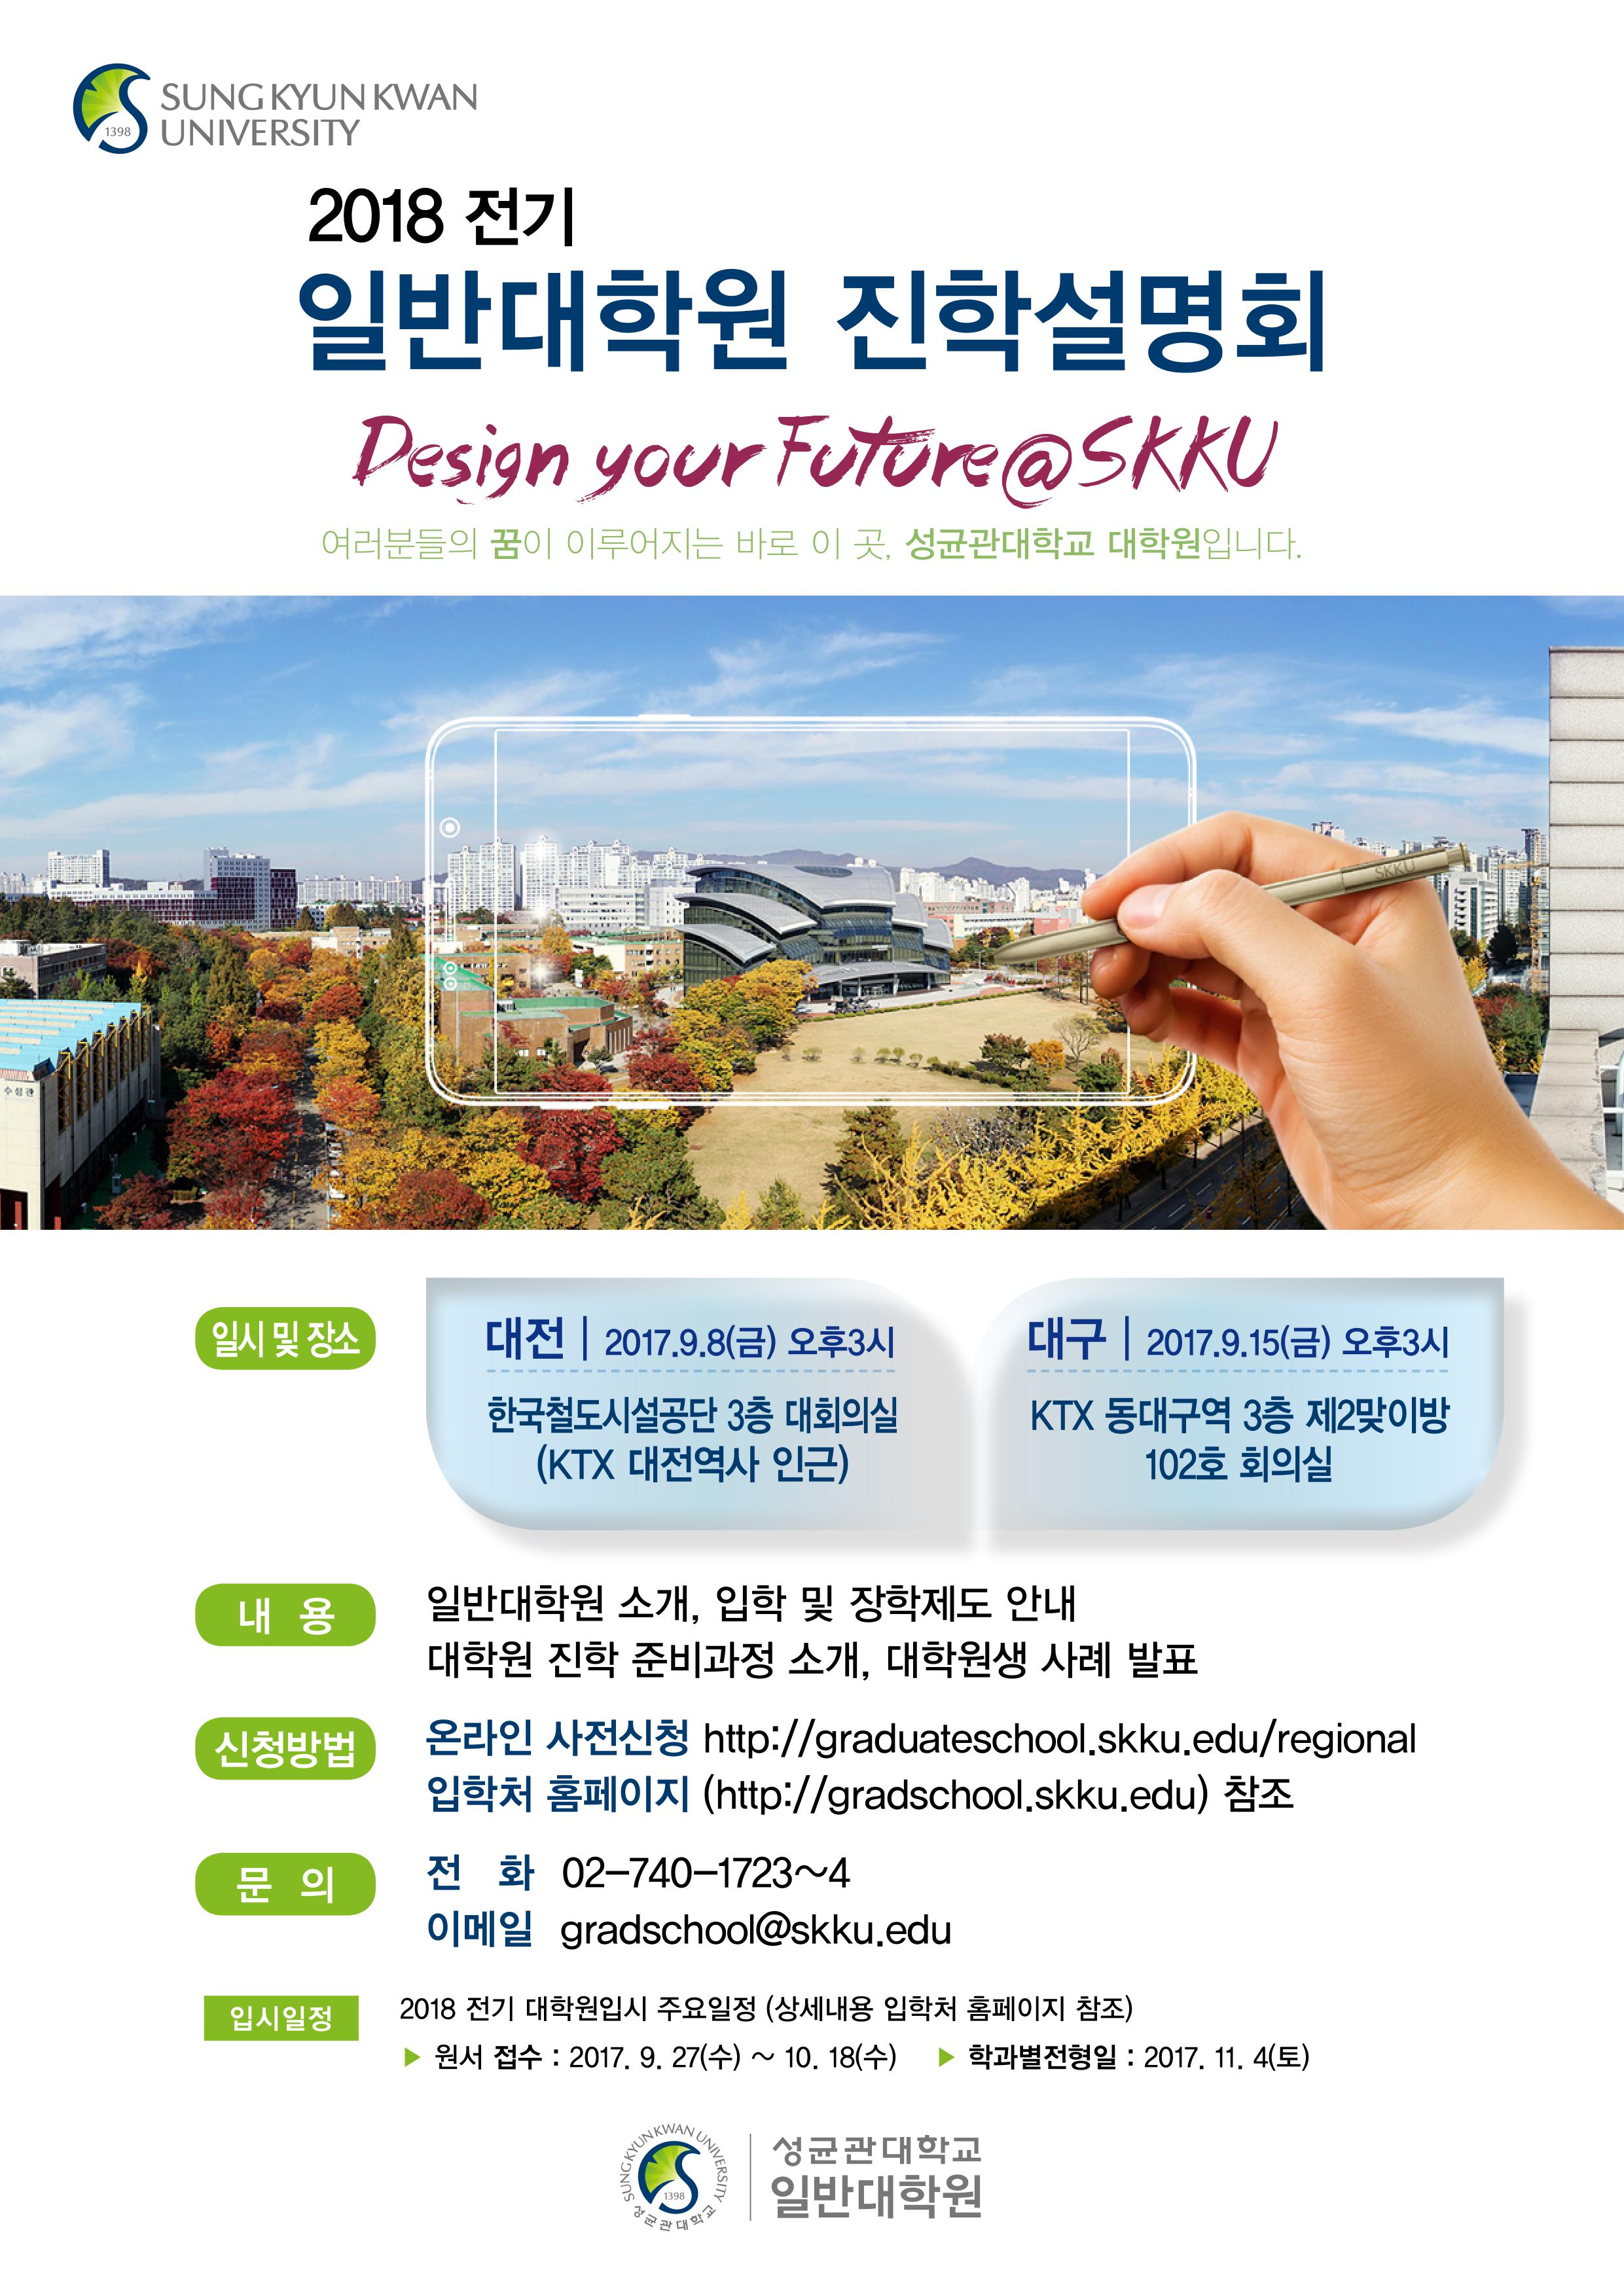 2018-전기 대학원 진학설명회 개최(대전/대구)